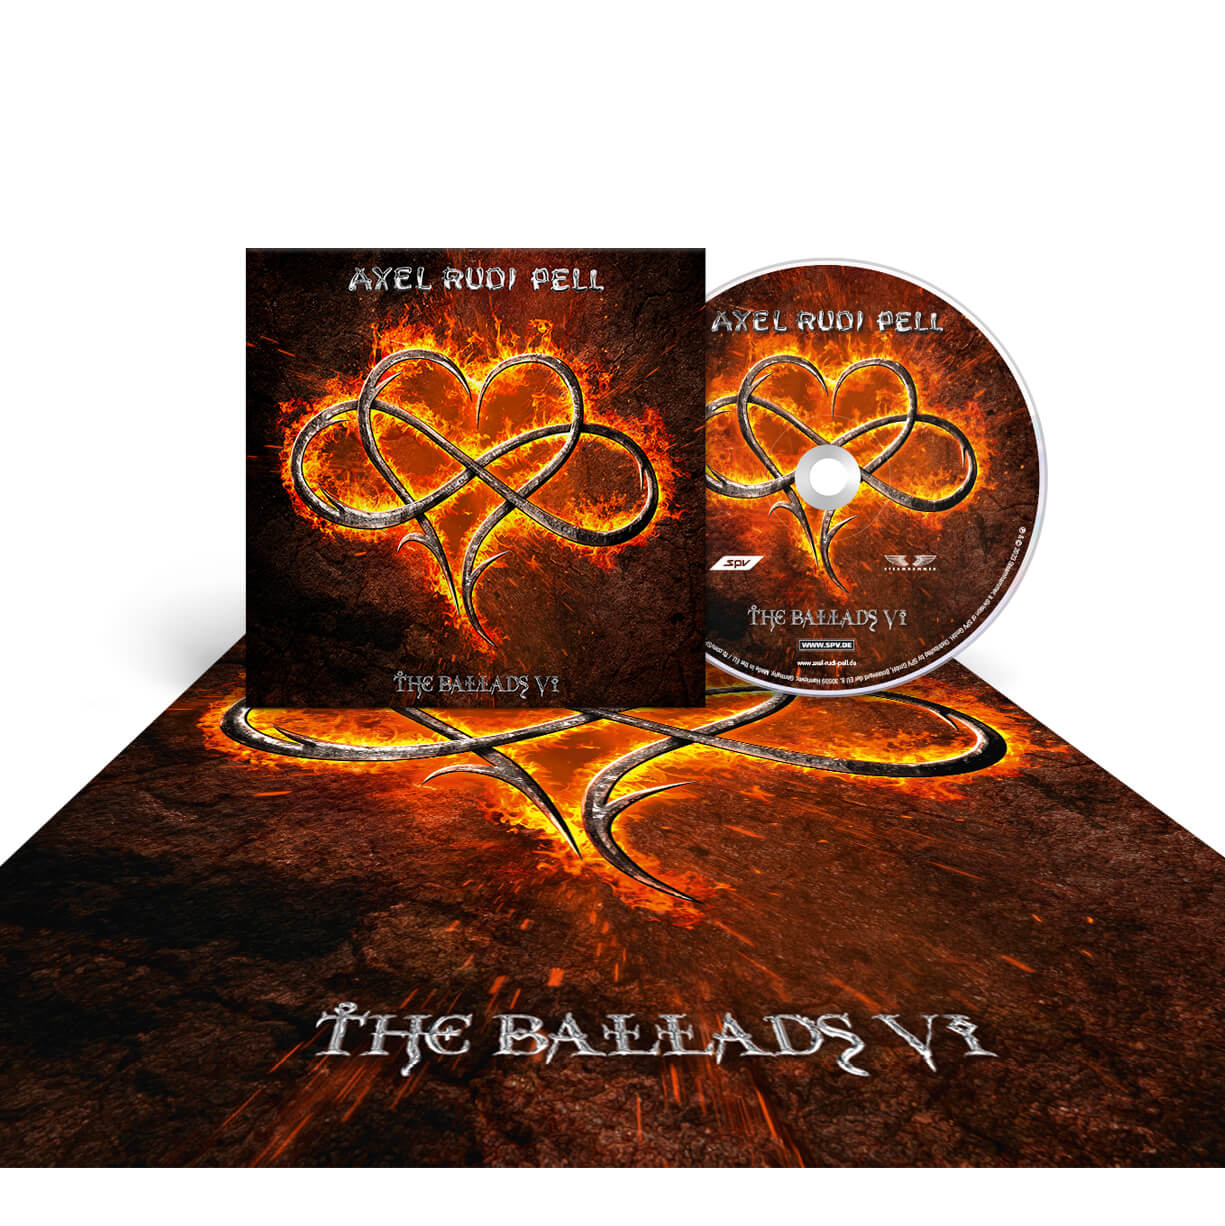 Axel Rudi Pell "The Ballads VI" CD-Bundle "Ballads VI"